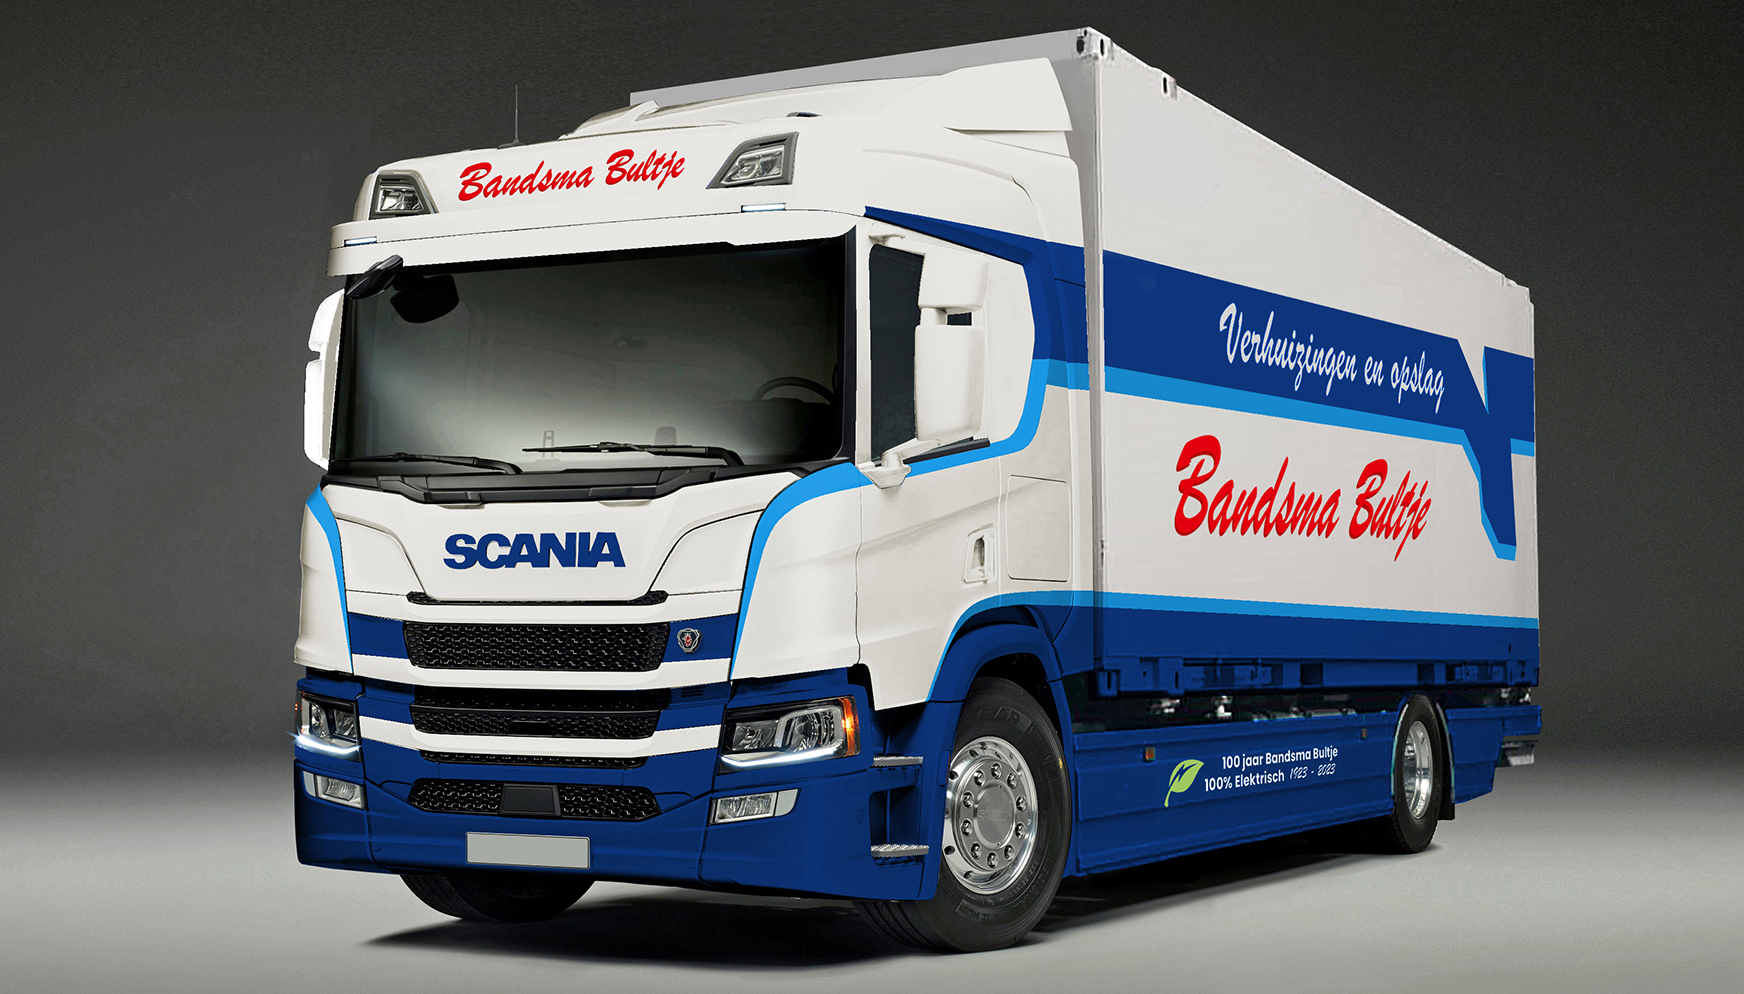 Elektrische Scania voor Bandsma Bultje Verhuizingen